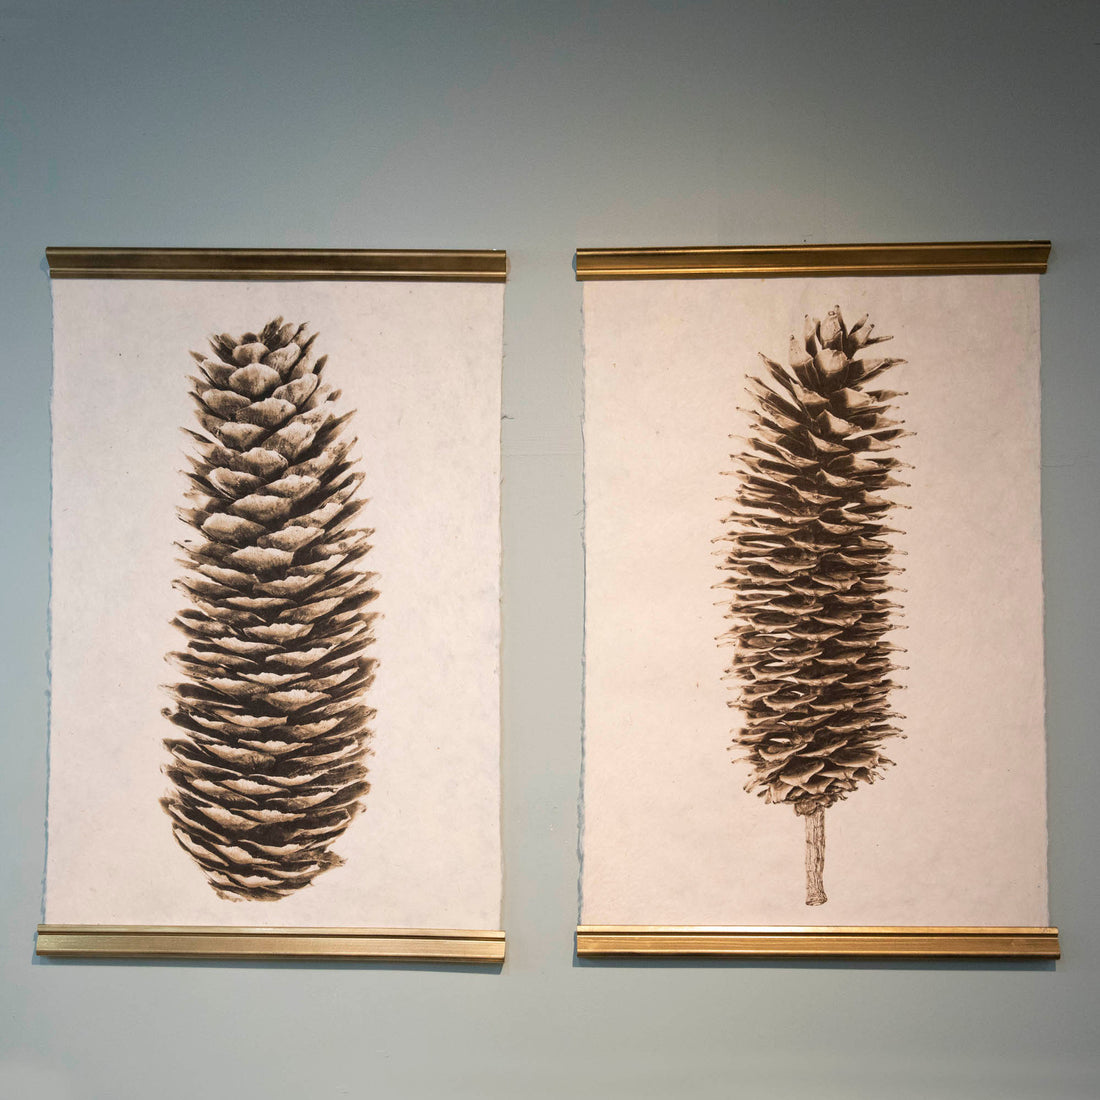 Sugar Pine Cone Art Print